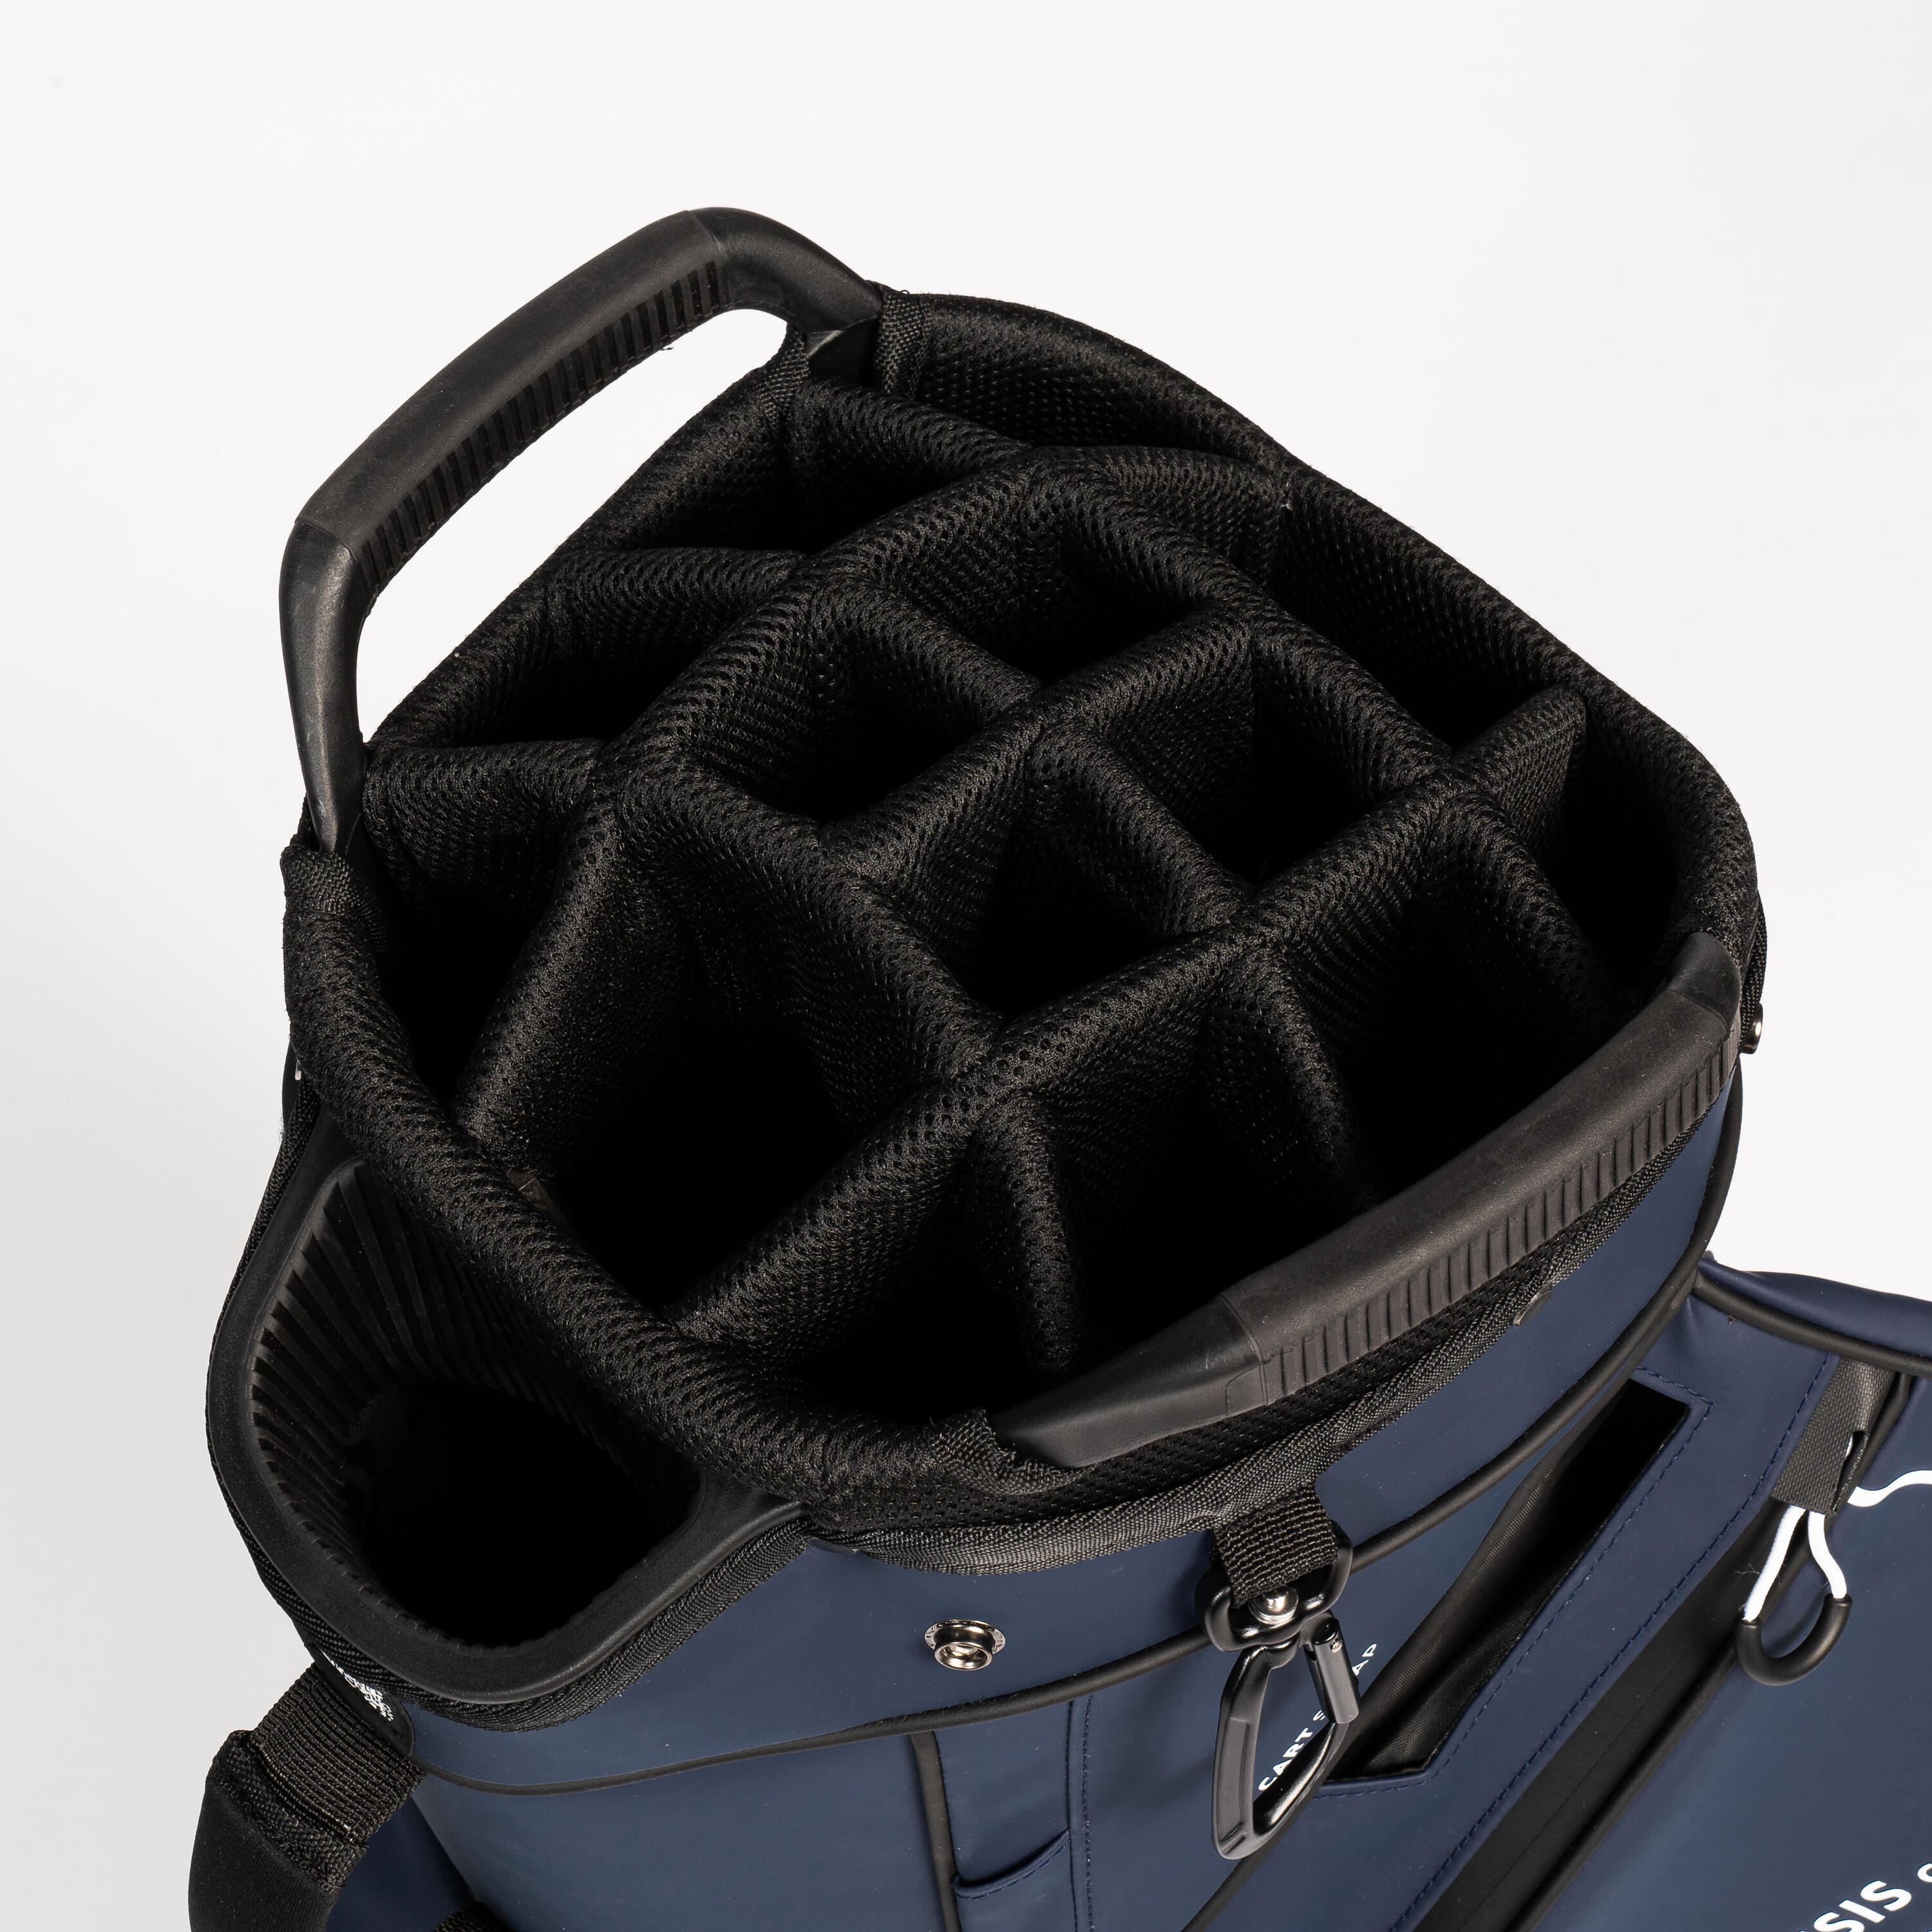 Golf trolley bag waterproof – INESIS Cart blue 3/12